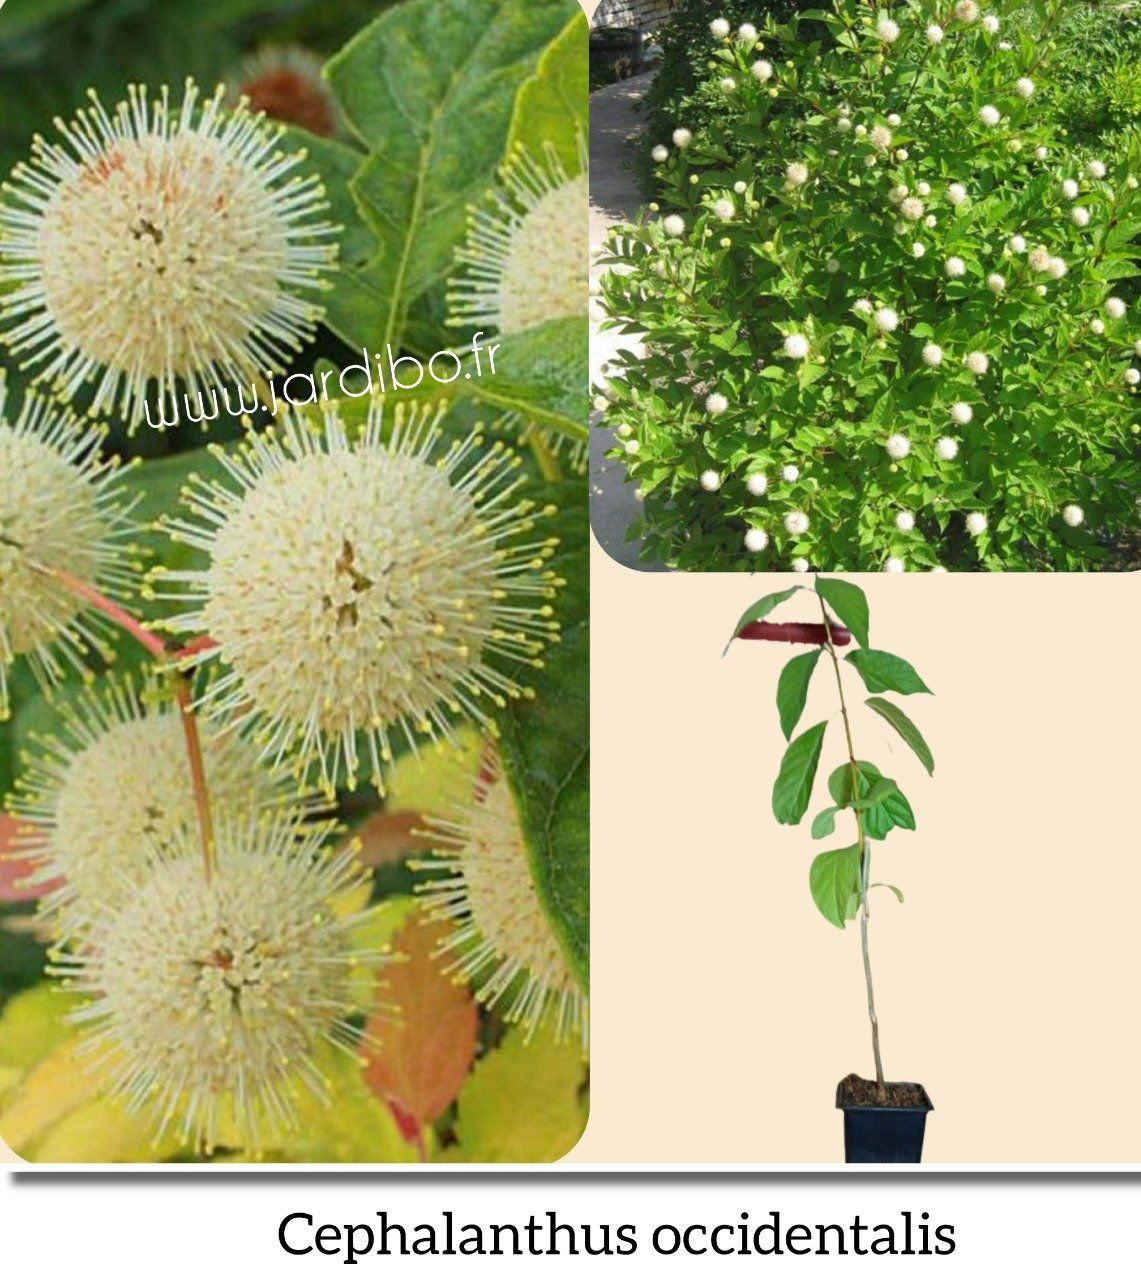 Cephalanthus occidentalis '' Bpis Bouton'